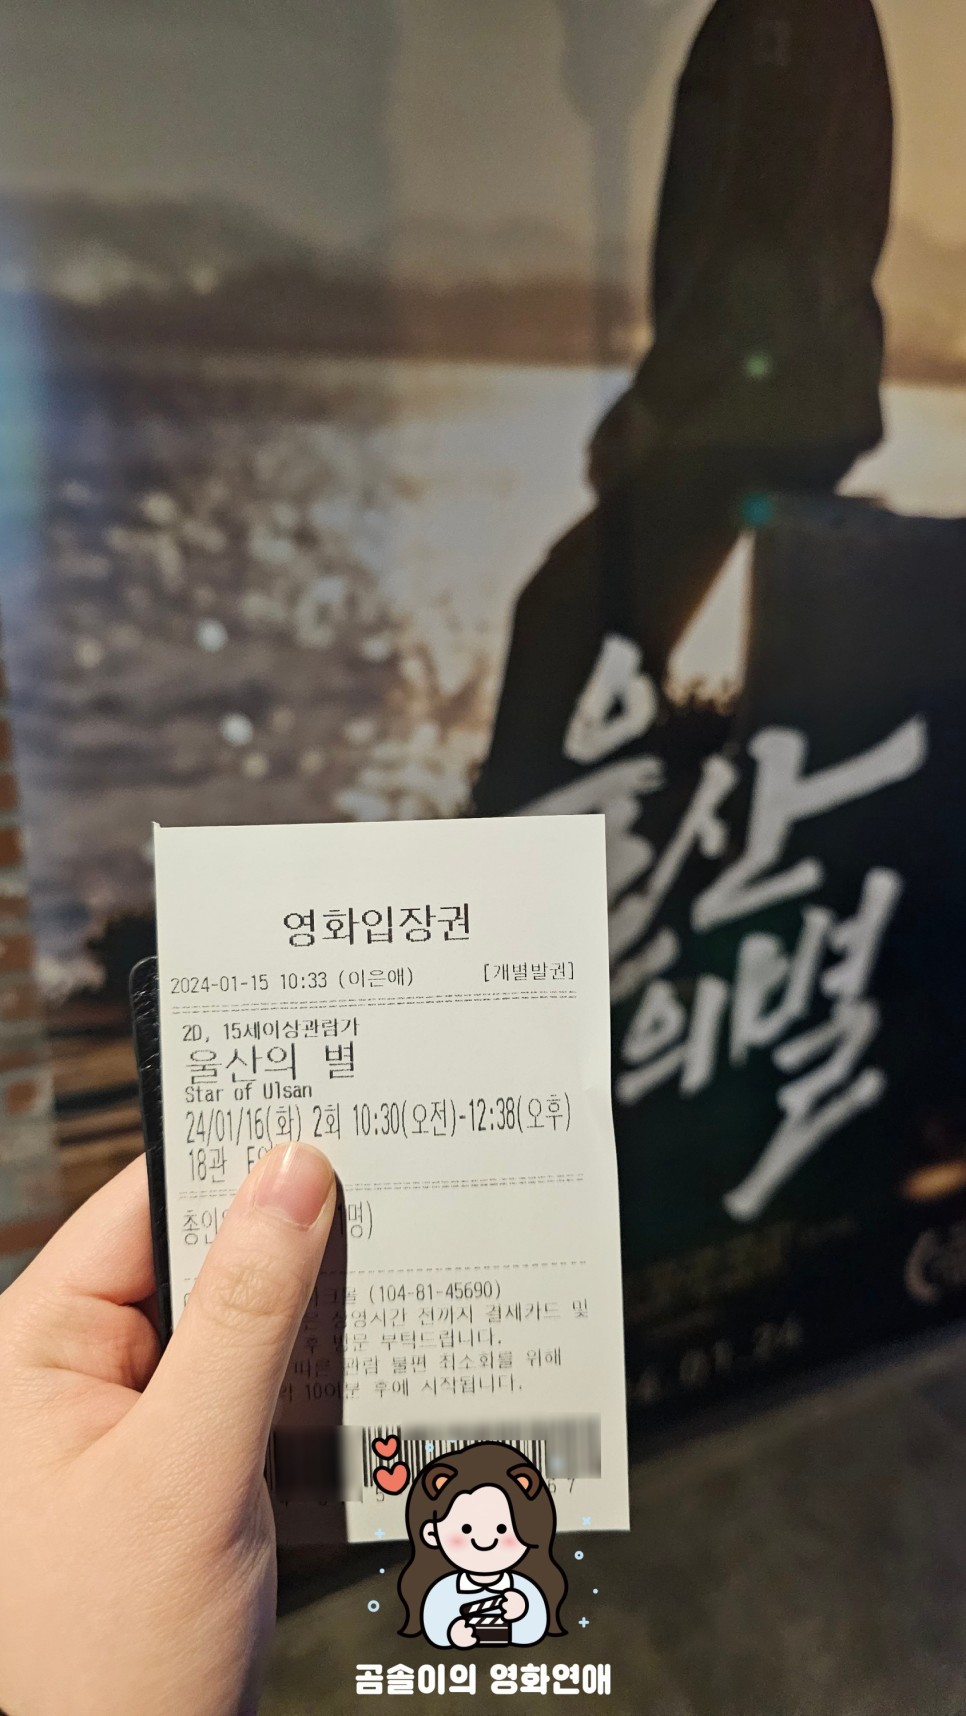 영화 울산의 별 정보 관람평 간담회 스케치 및 한국 독립 영화 리뷰